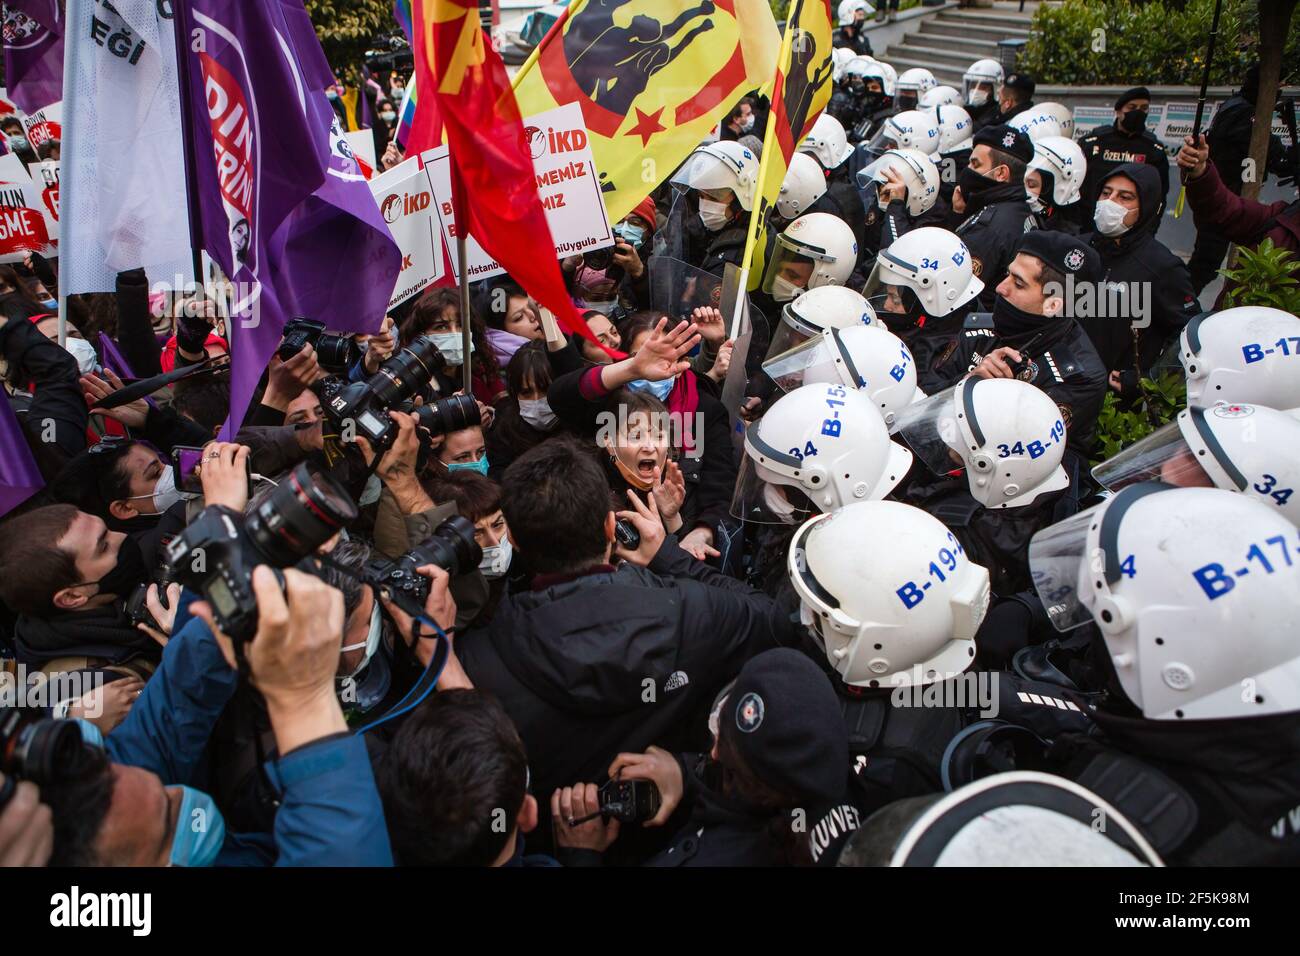 Demonstranten konfrontieren die Polizei während der Demonstration. In Kadikoy versammelten sich Menschen, um gegen die Entscheidung über den Austritt aus der Istanbuler Konvention zu protestieren. Stockfoto